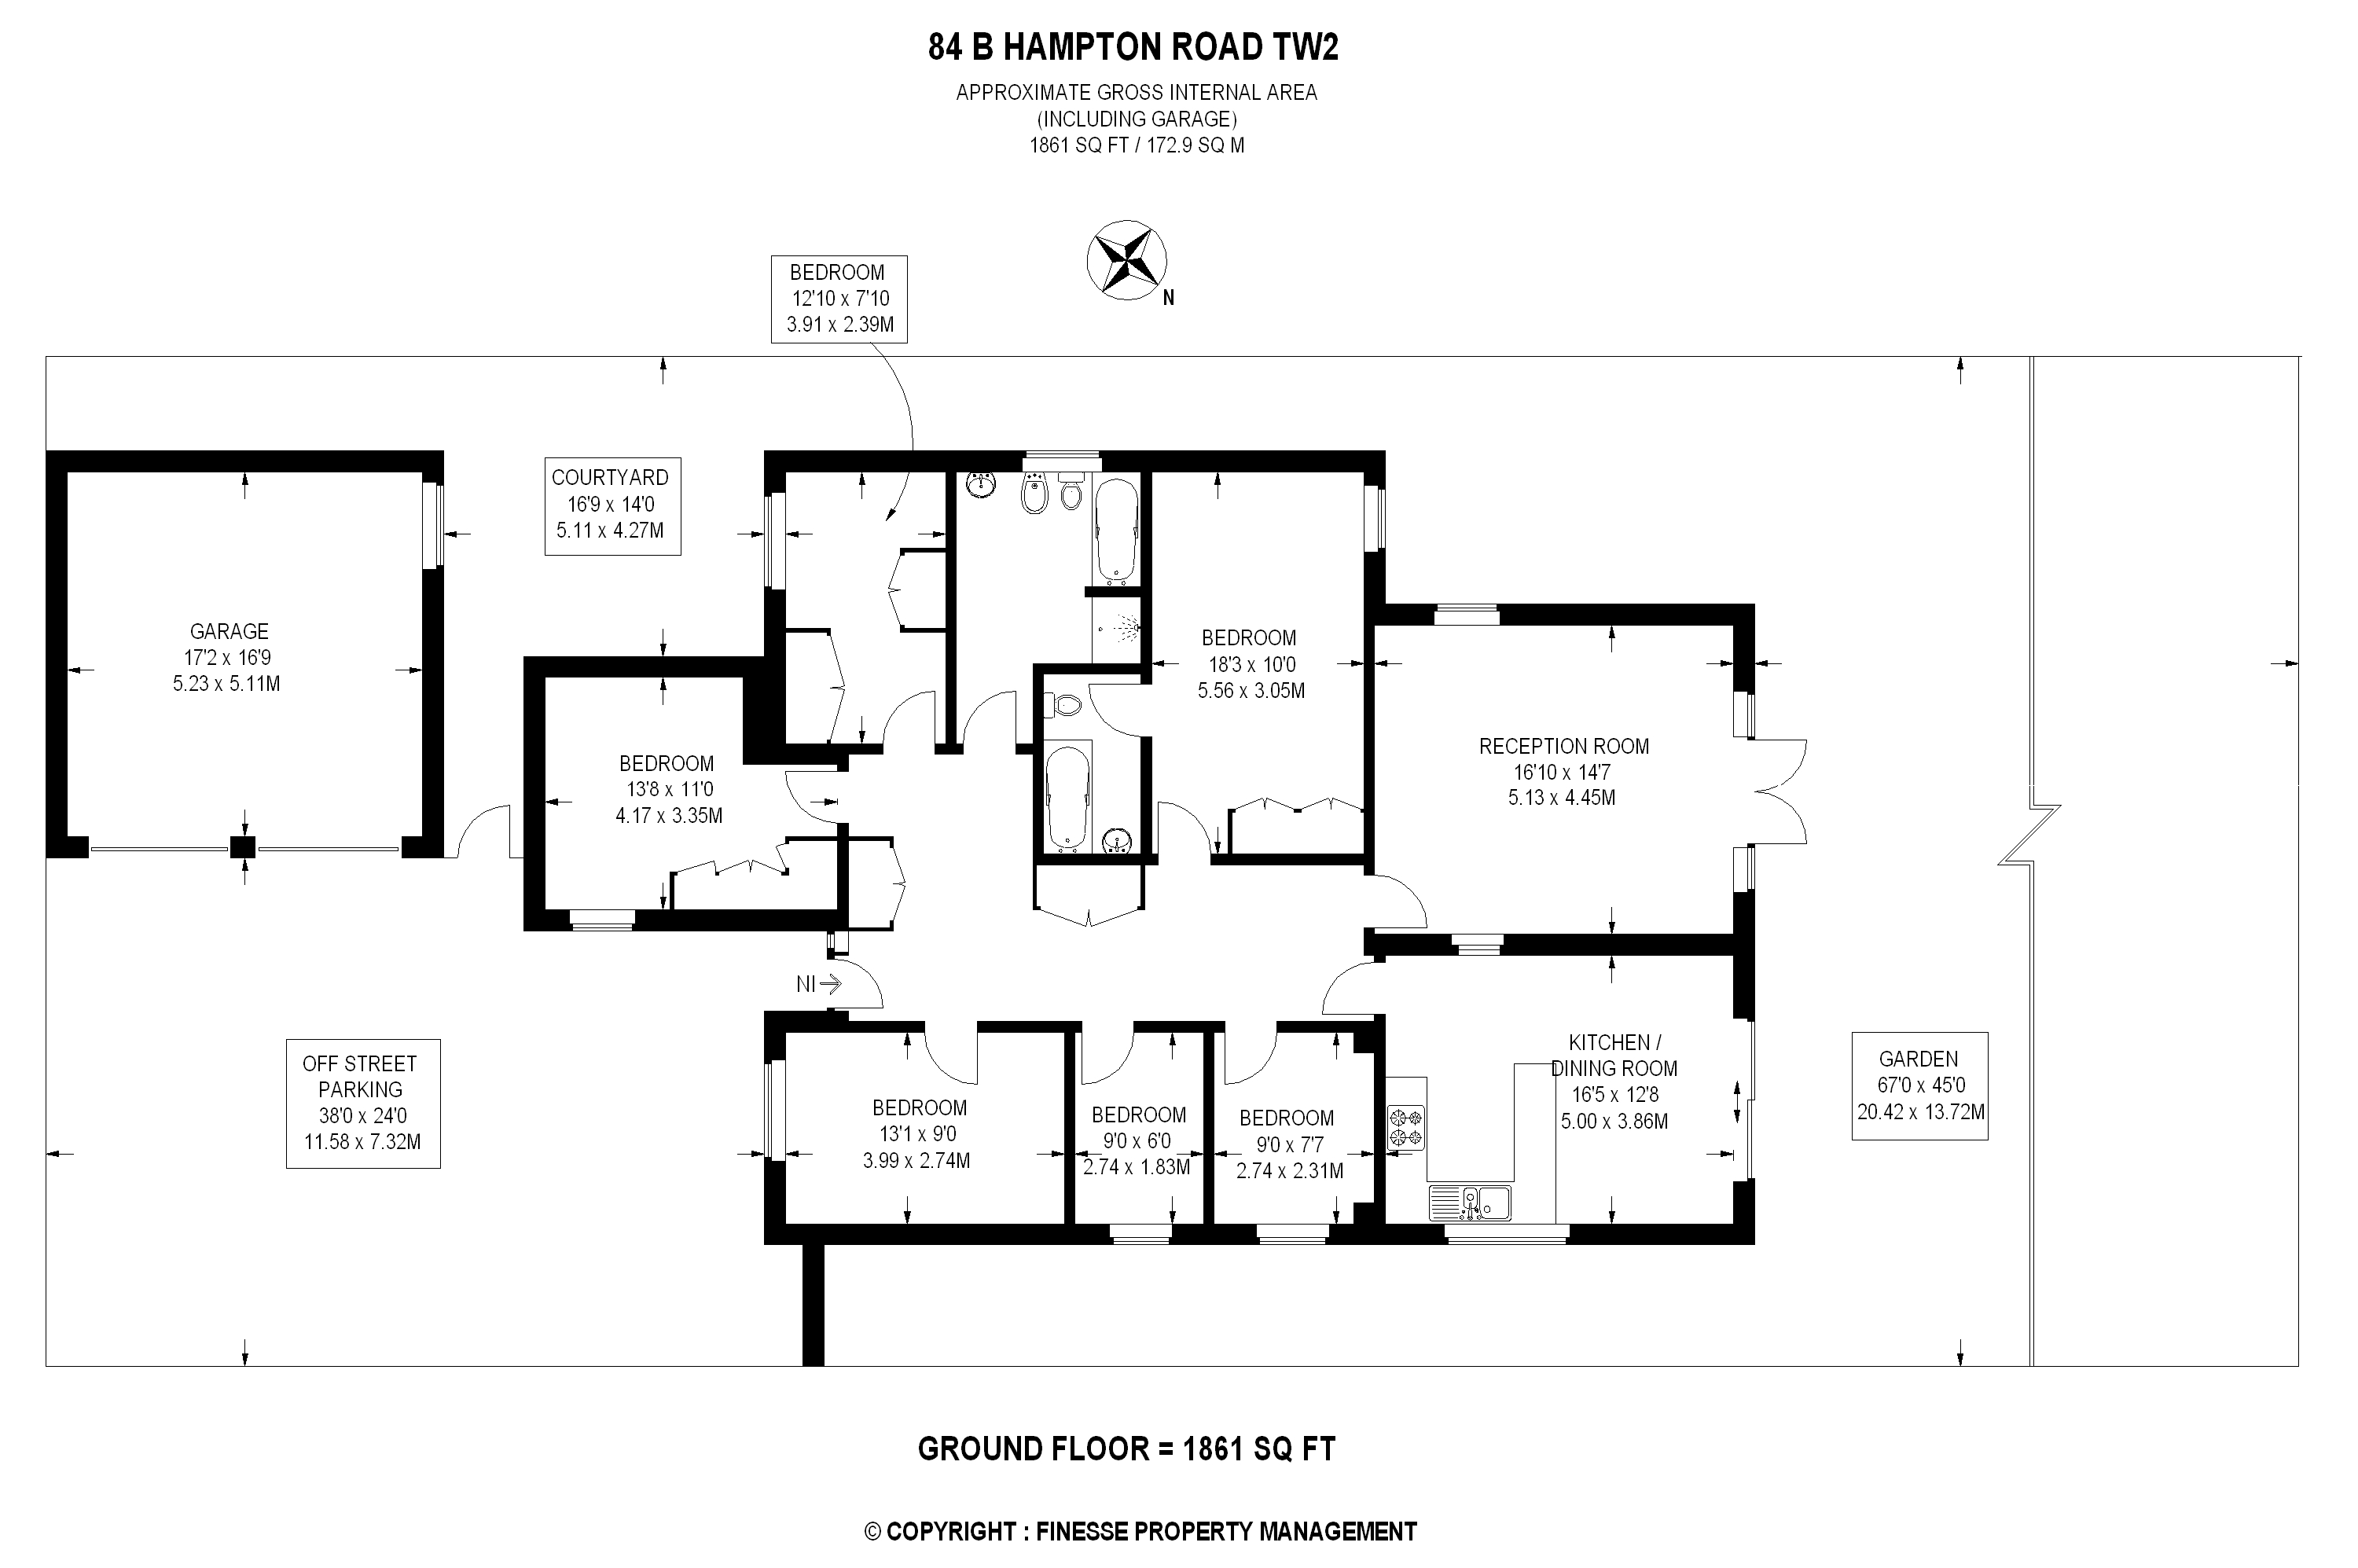 6 Bedrooms Bungalow to rent in Hampton Rd, Twickenham TW2